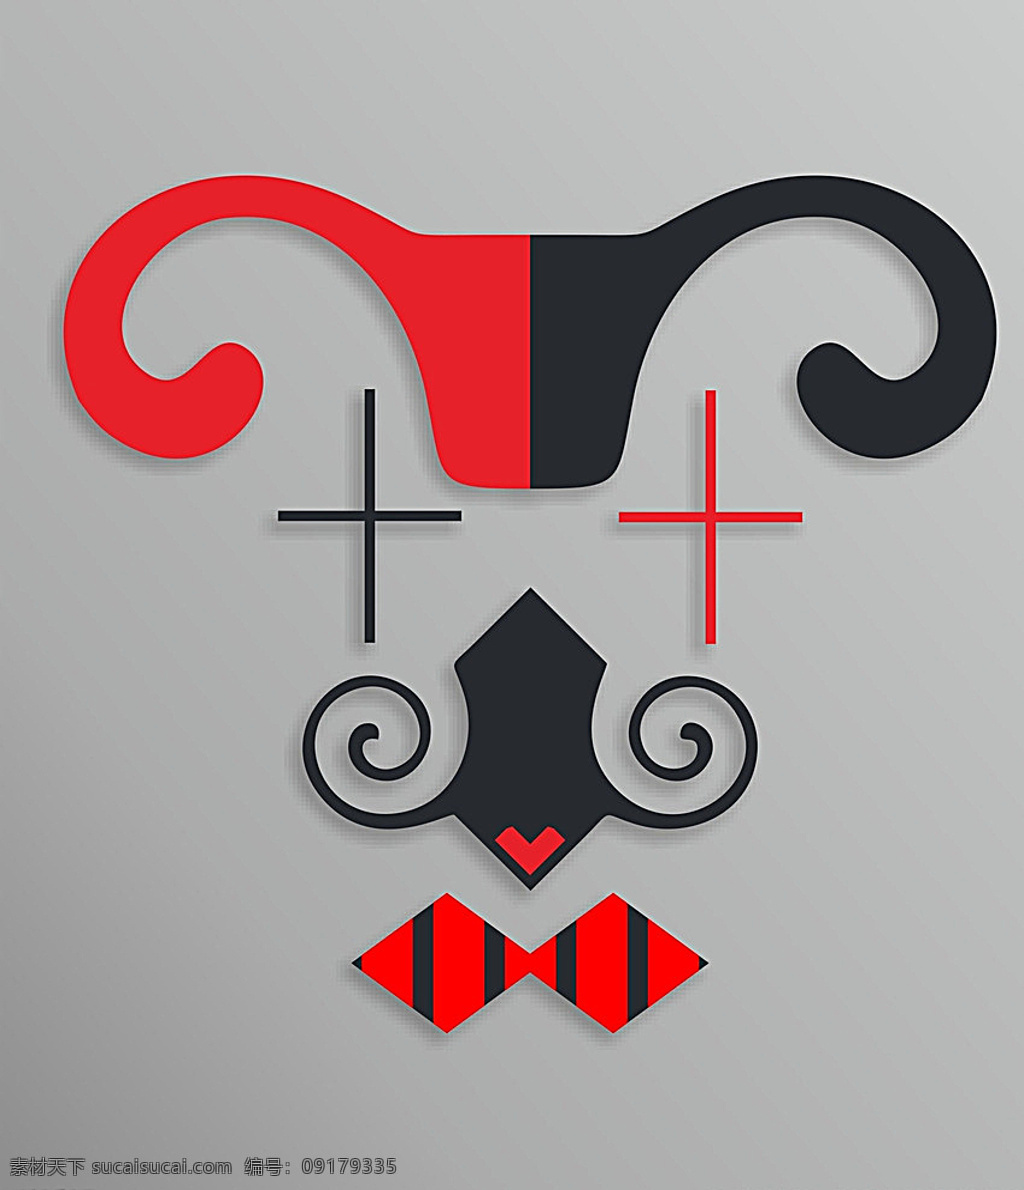 红 小丑 矩形 黑 诙谐 标志图标 其他图标 灰色